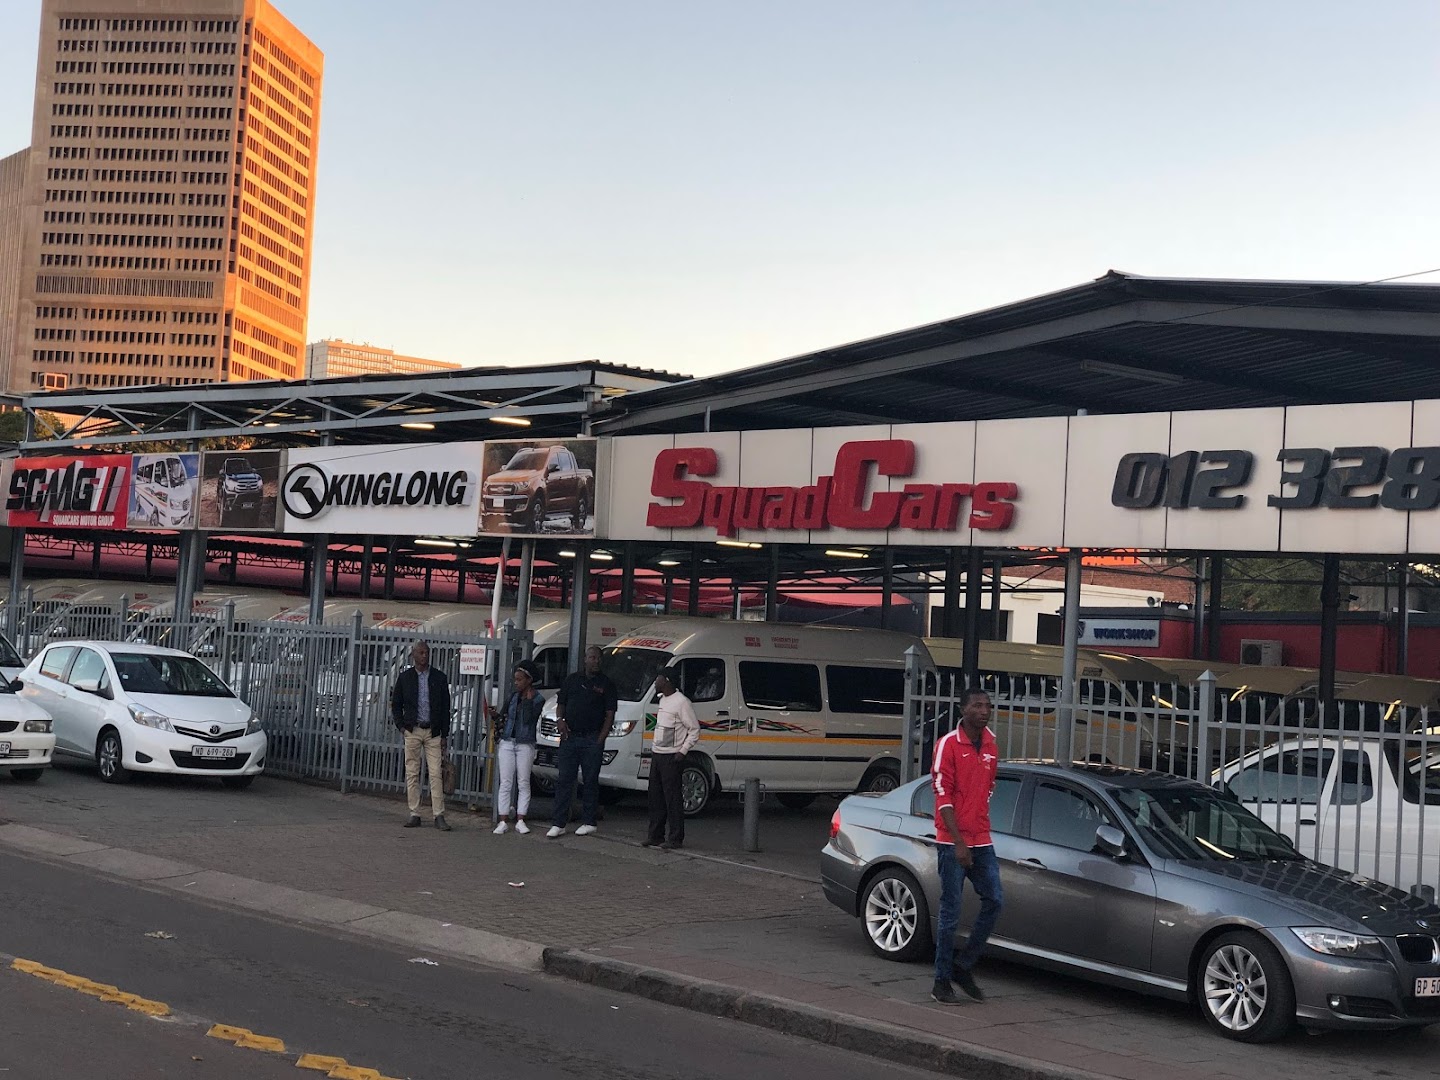 Squadcars Pretoria Central